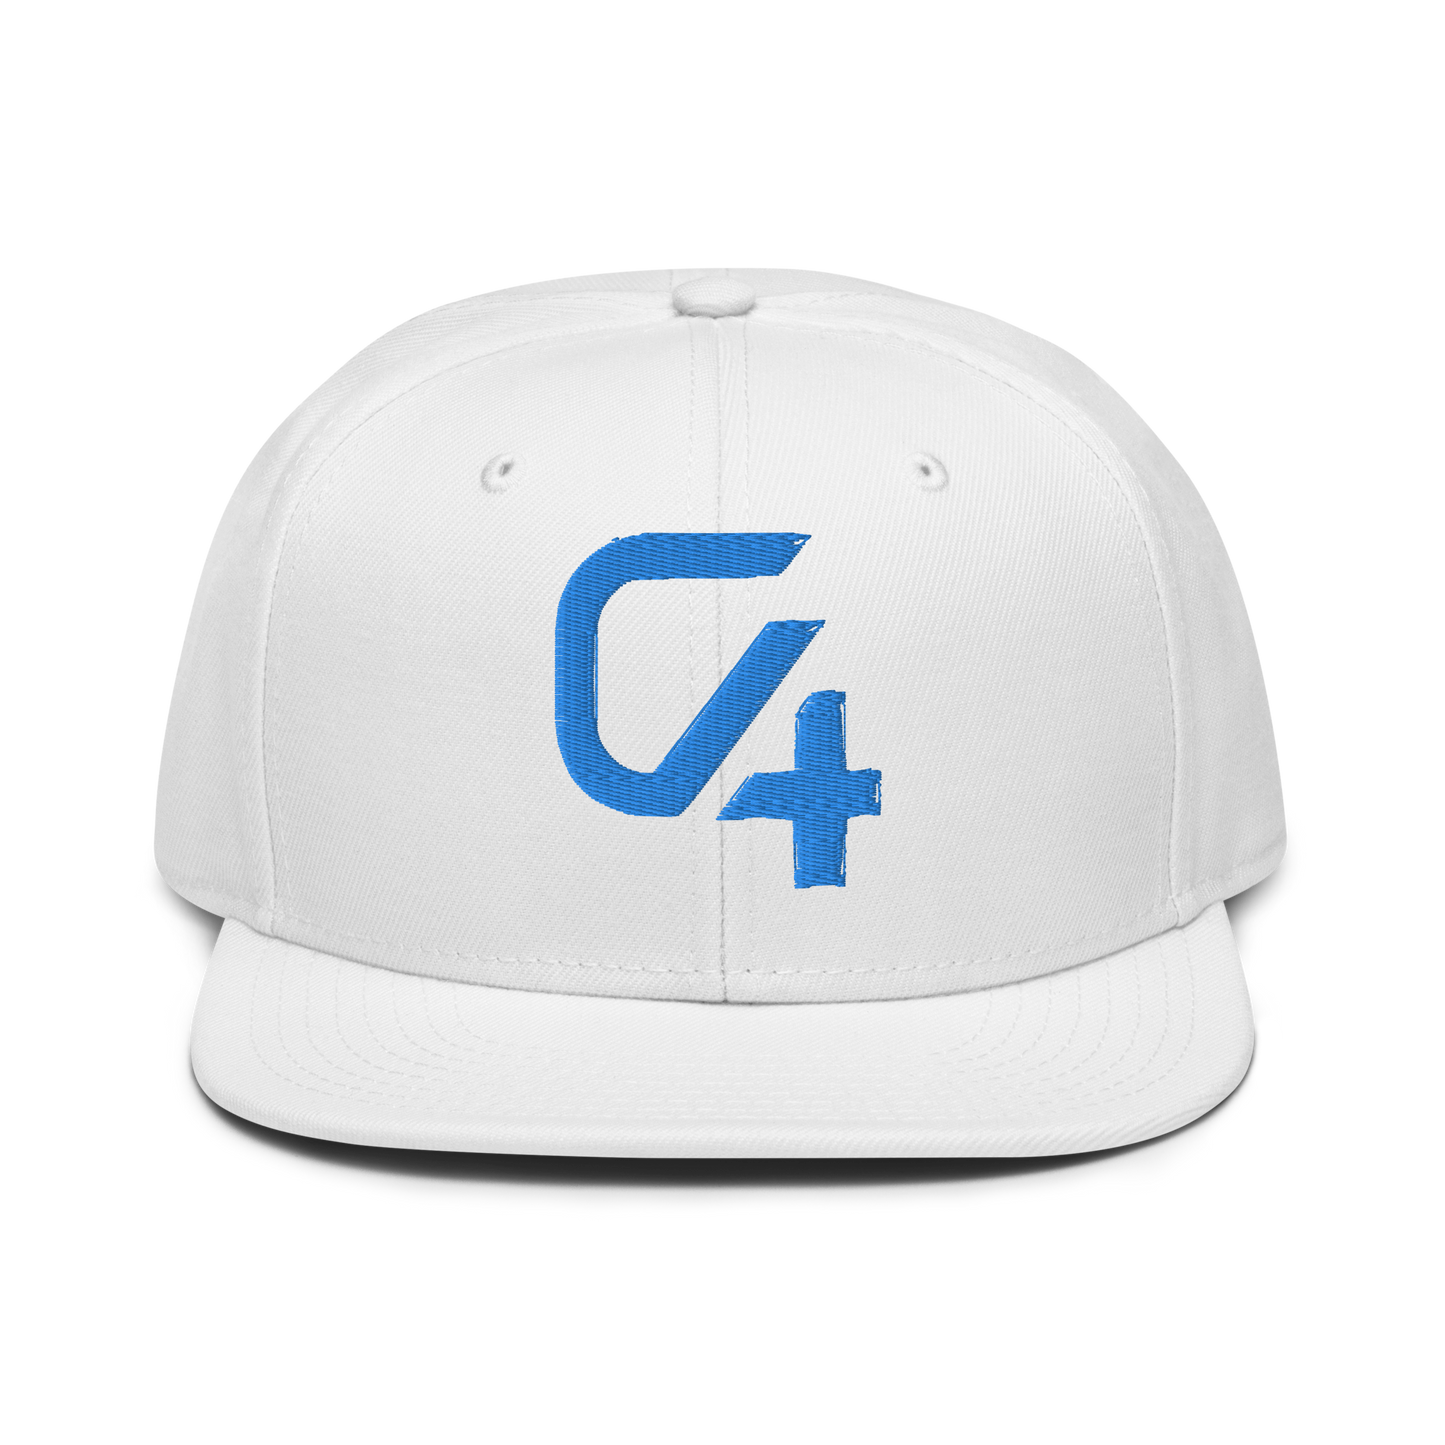 Ch4nten Snapback Cap med Broderet Logo